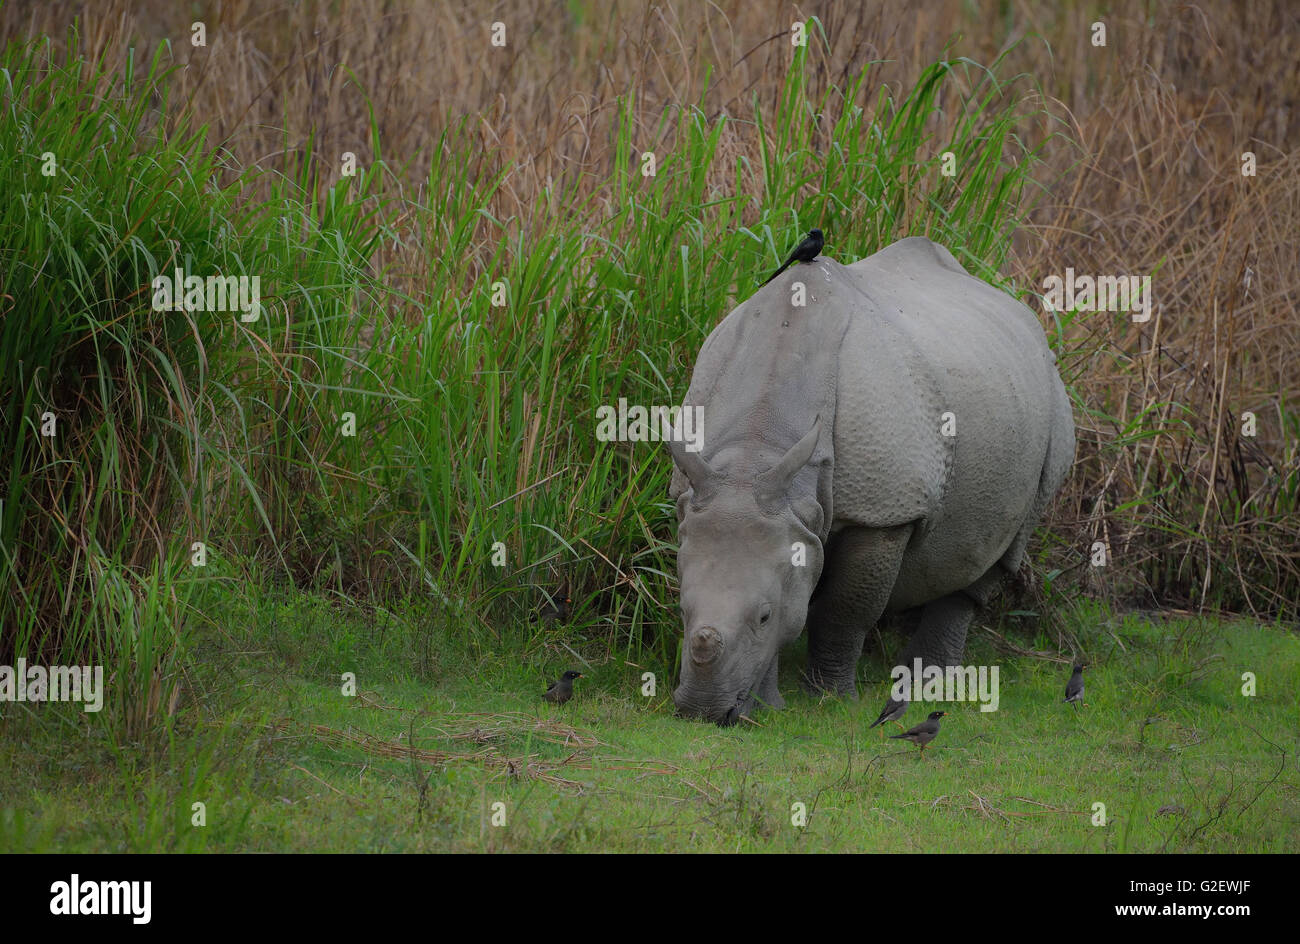 Indian Rhinoceros or Great Indian One-horned rhinoceros (Rhinoceros unicornis), with birds, Kaziranga National Park, India Stock Photo